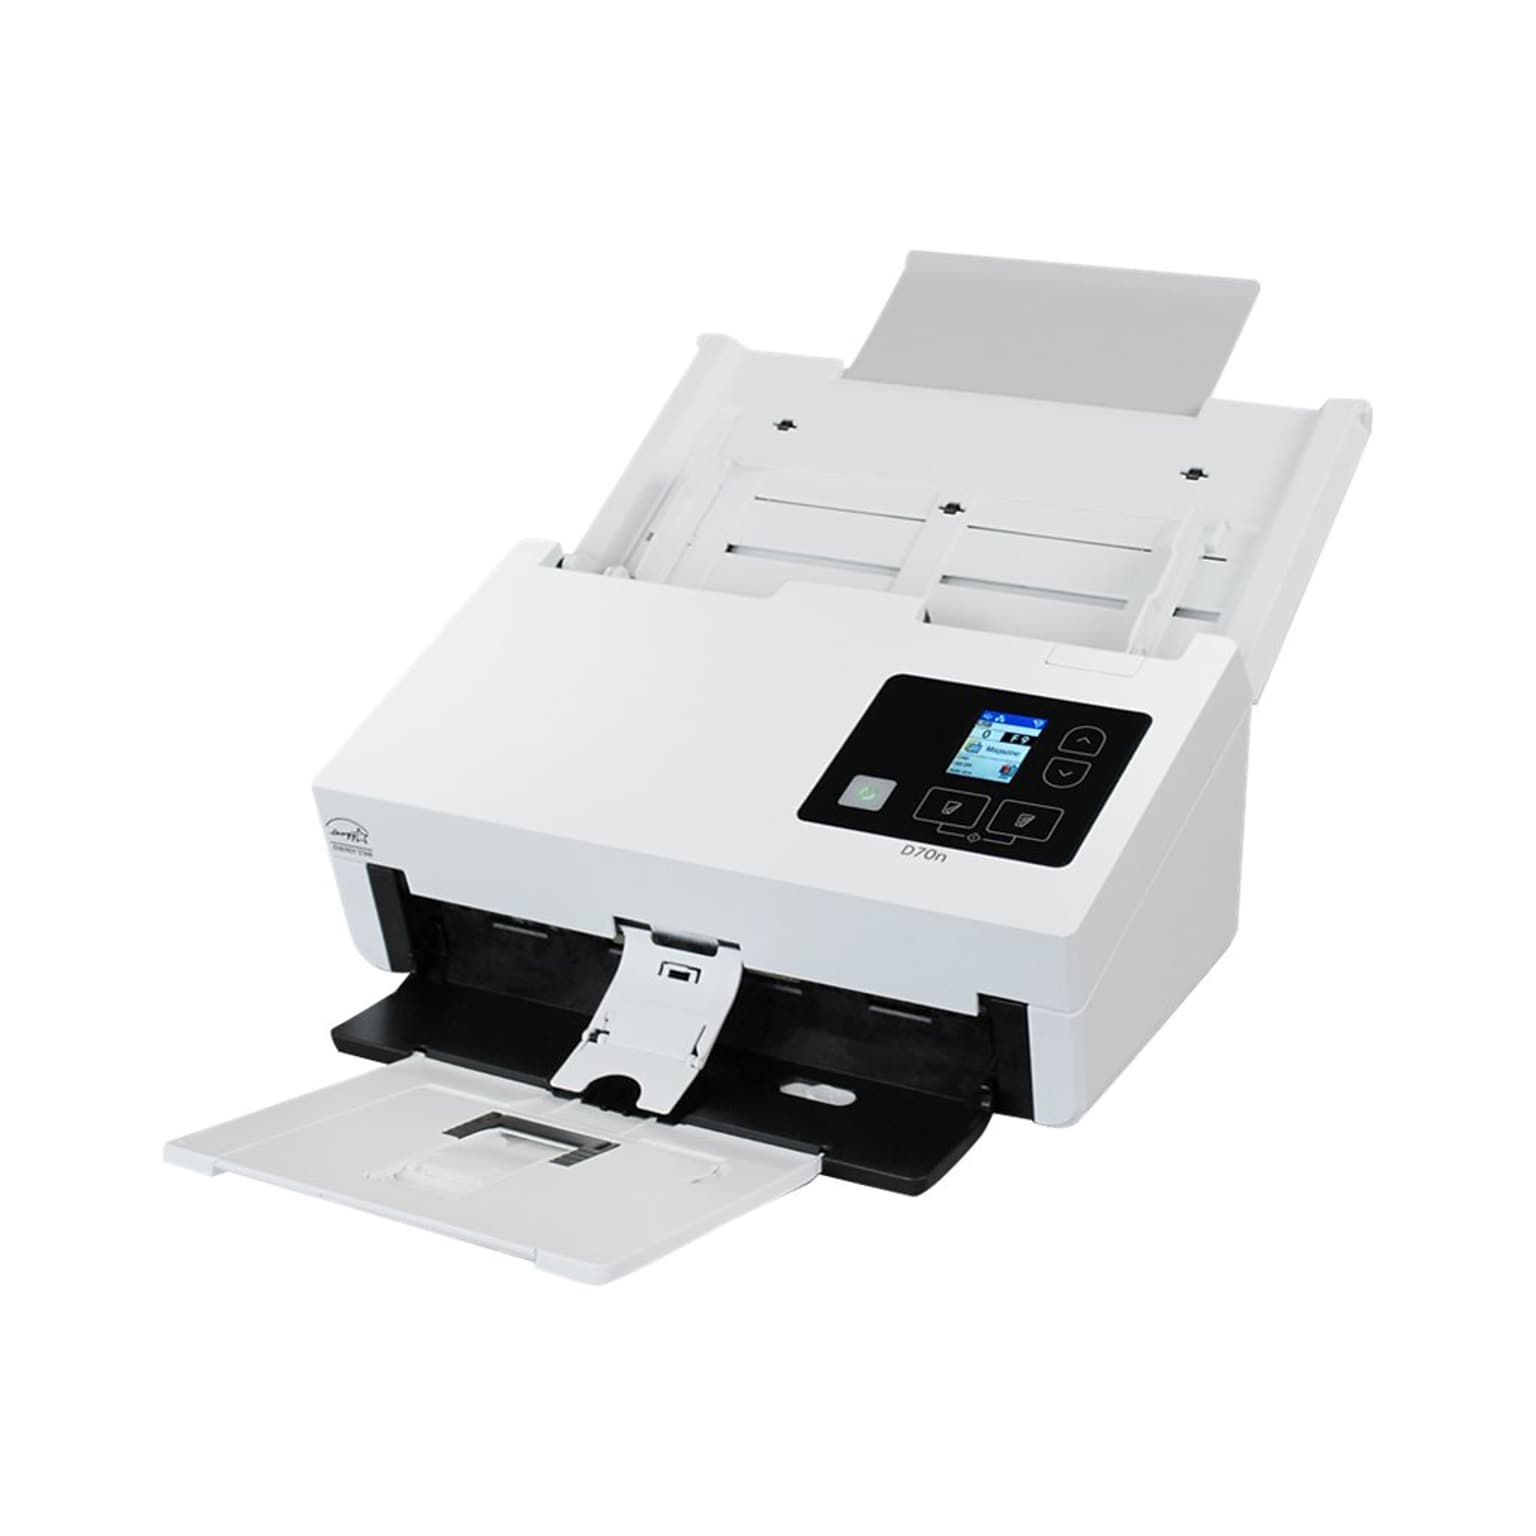 Xerox D70n XD70N-U Duplex Document Scanner, White